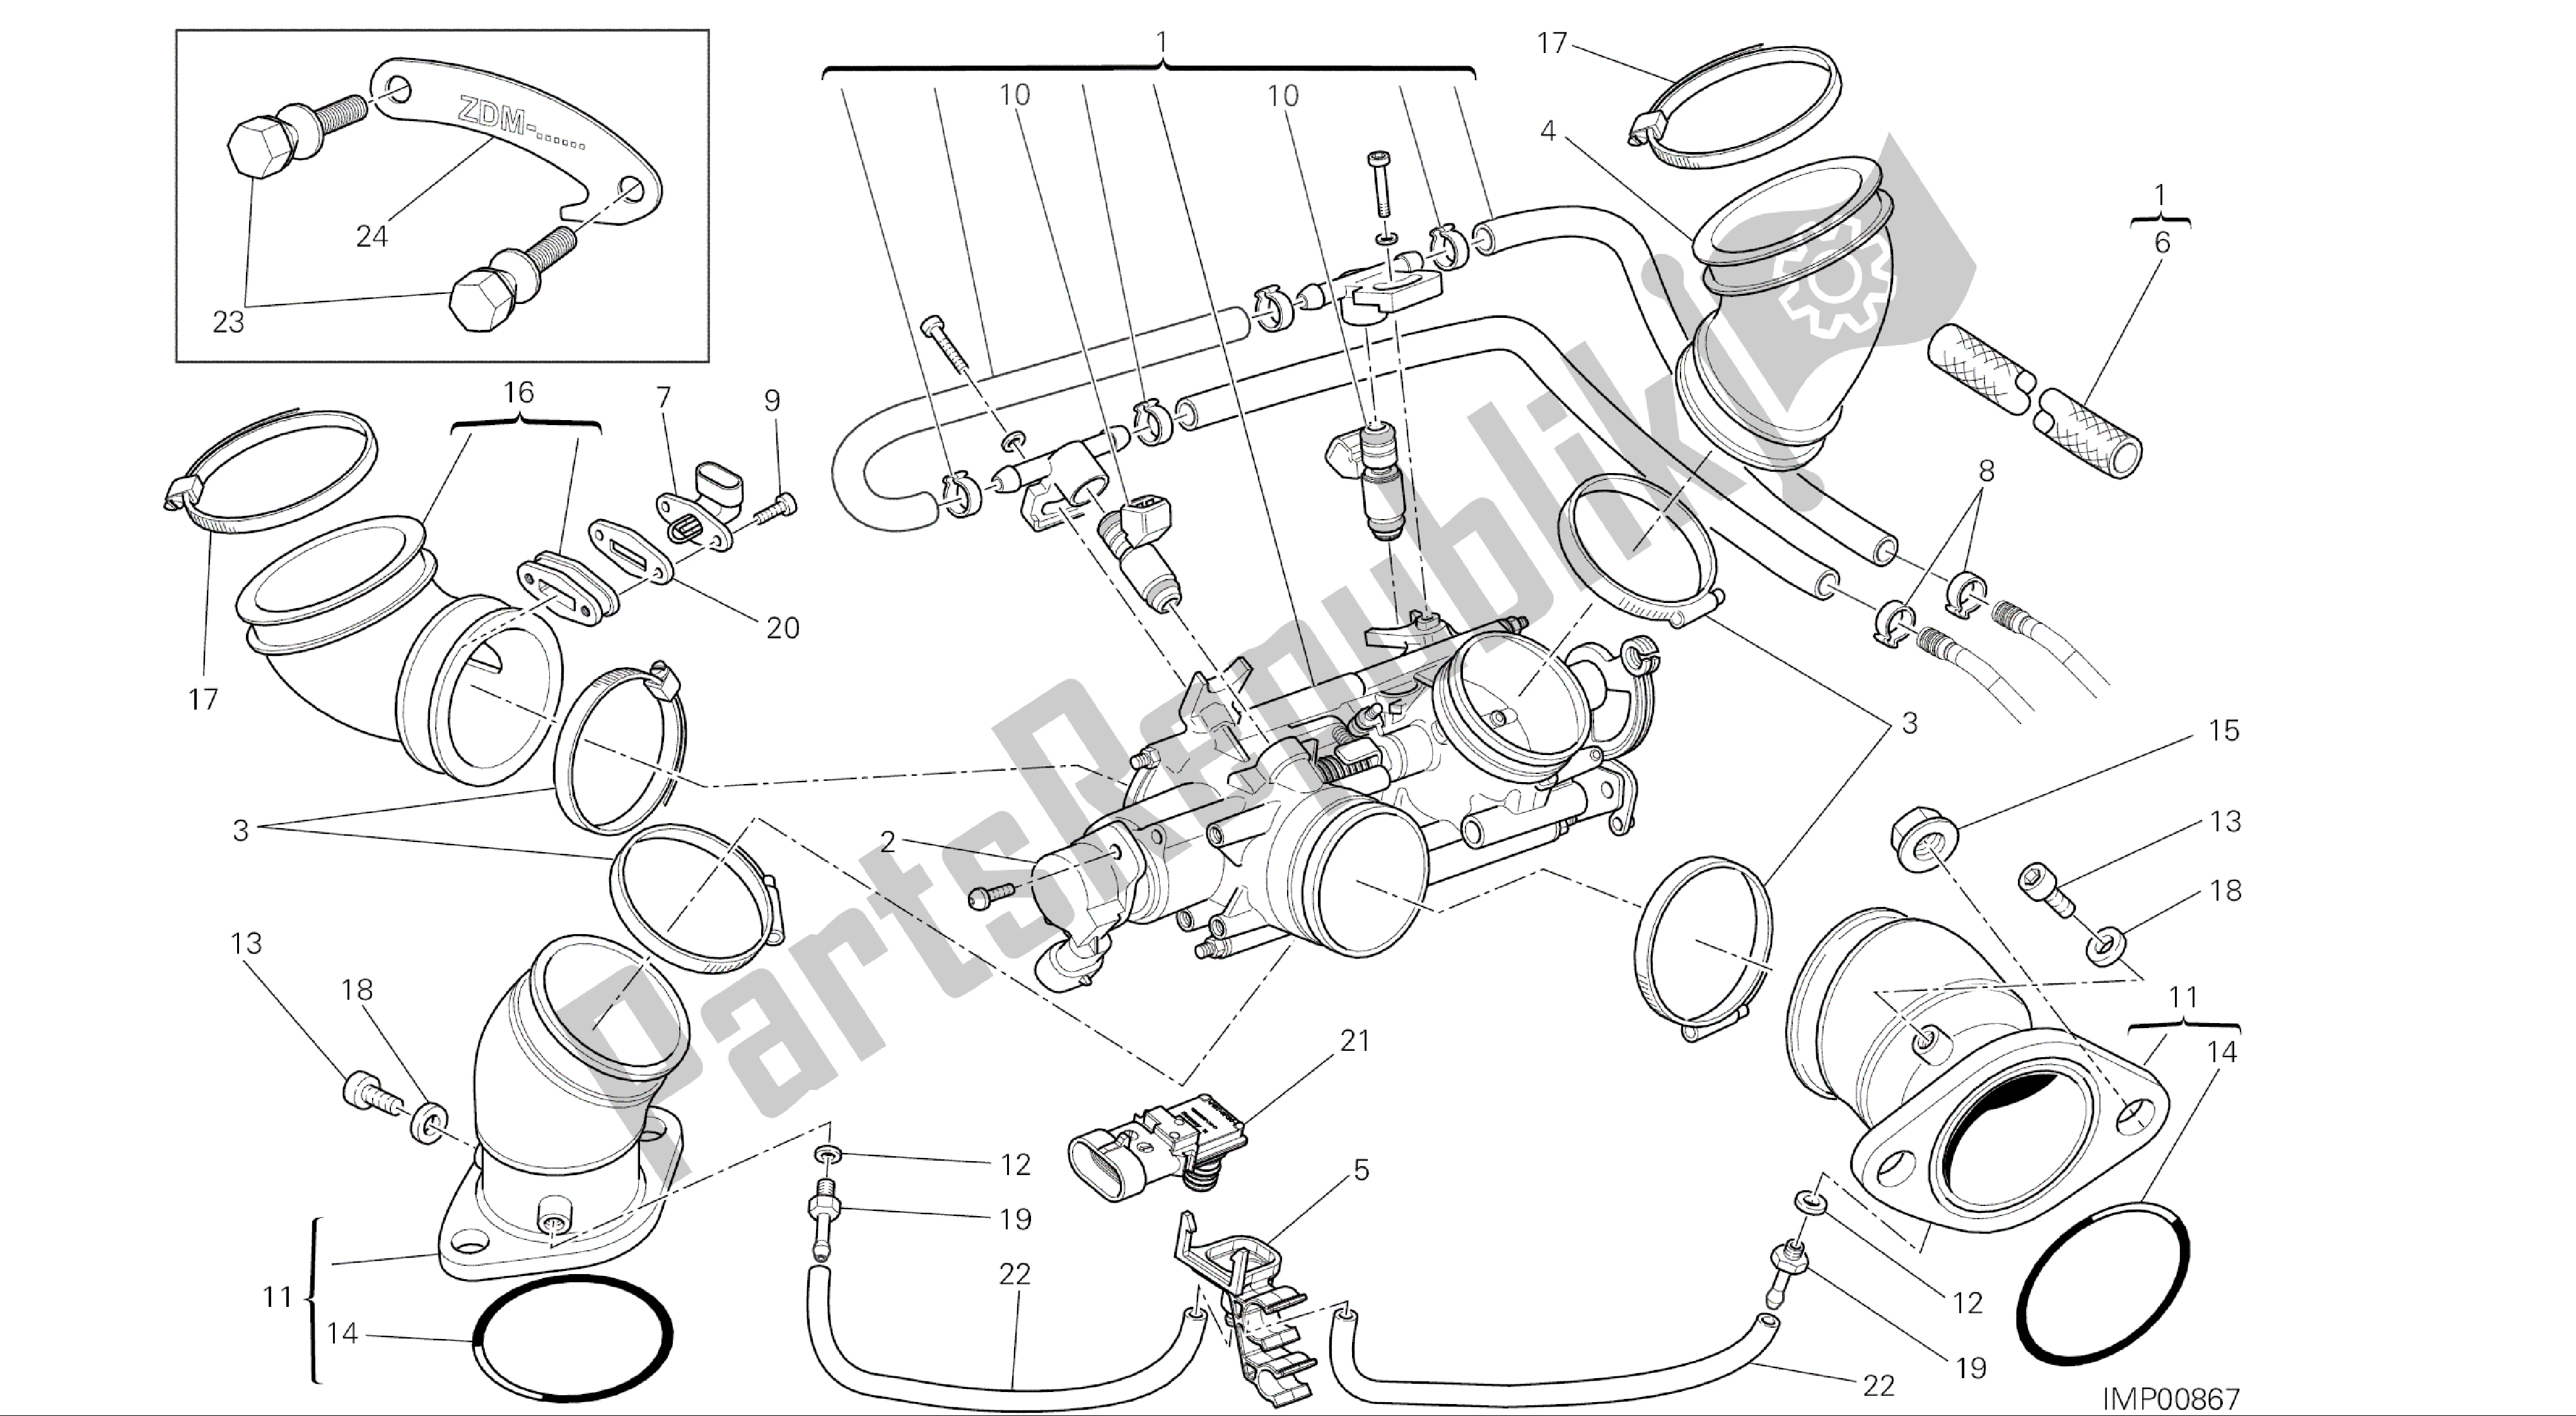 Alle onderdelen voor de Tekening 016 - Gasklephuis [mod: M696 Abs, M696 + Abs; Xst: Aus, Eur, Jap] Groepsmotor van de Ducati Monster ABS 696 2014